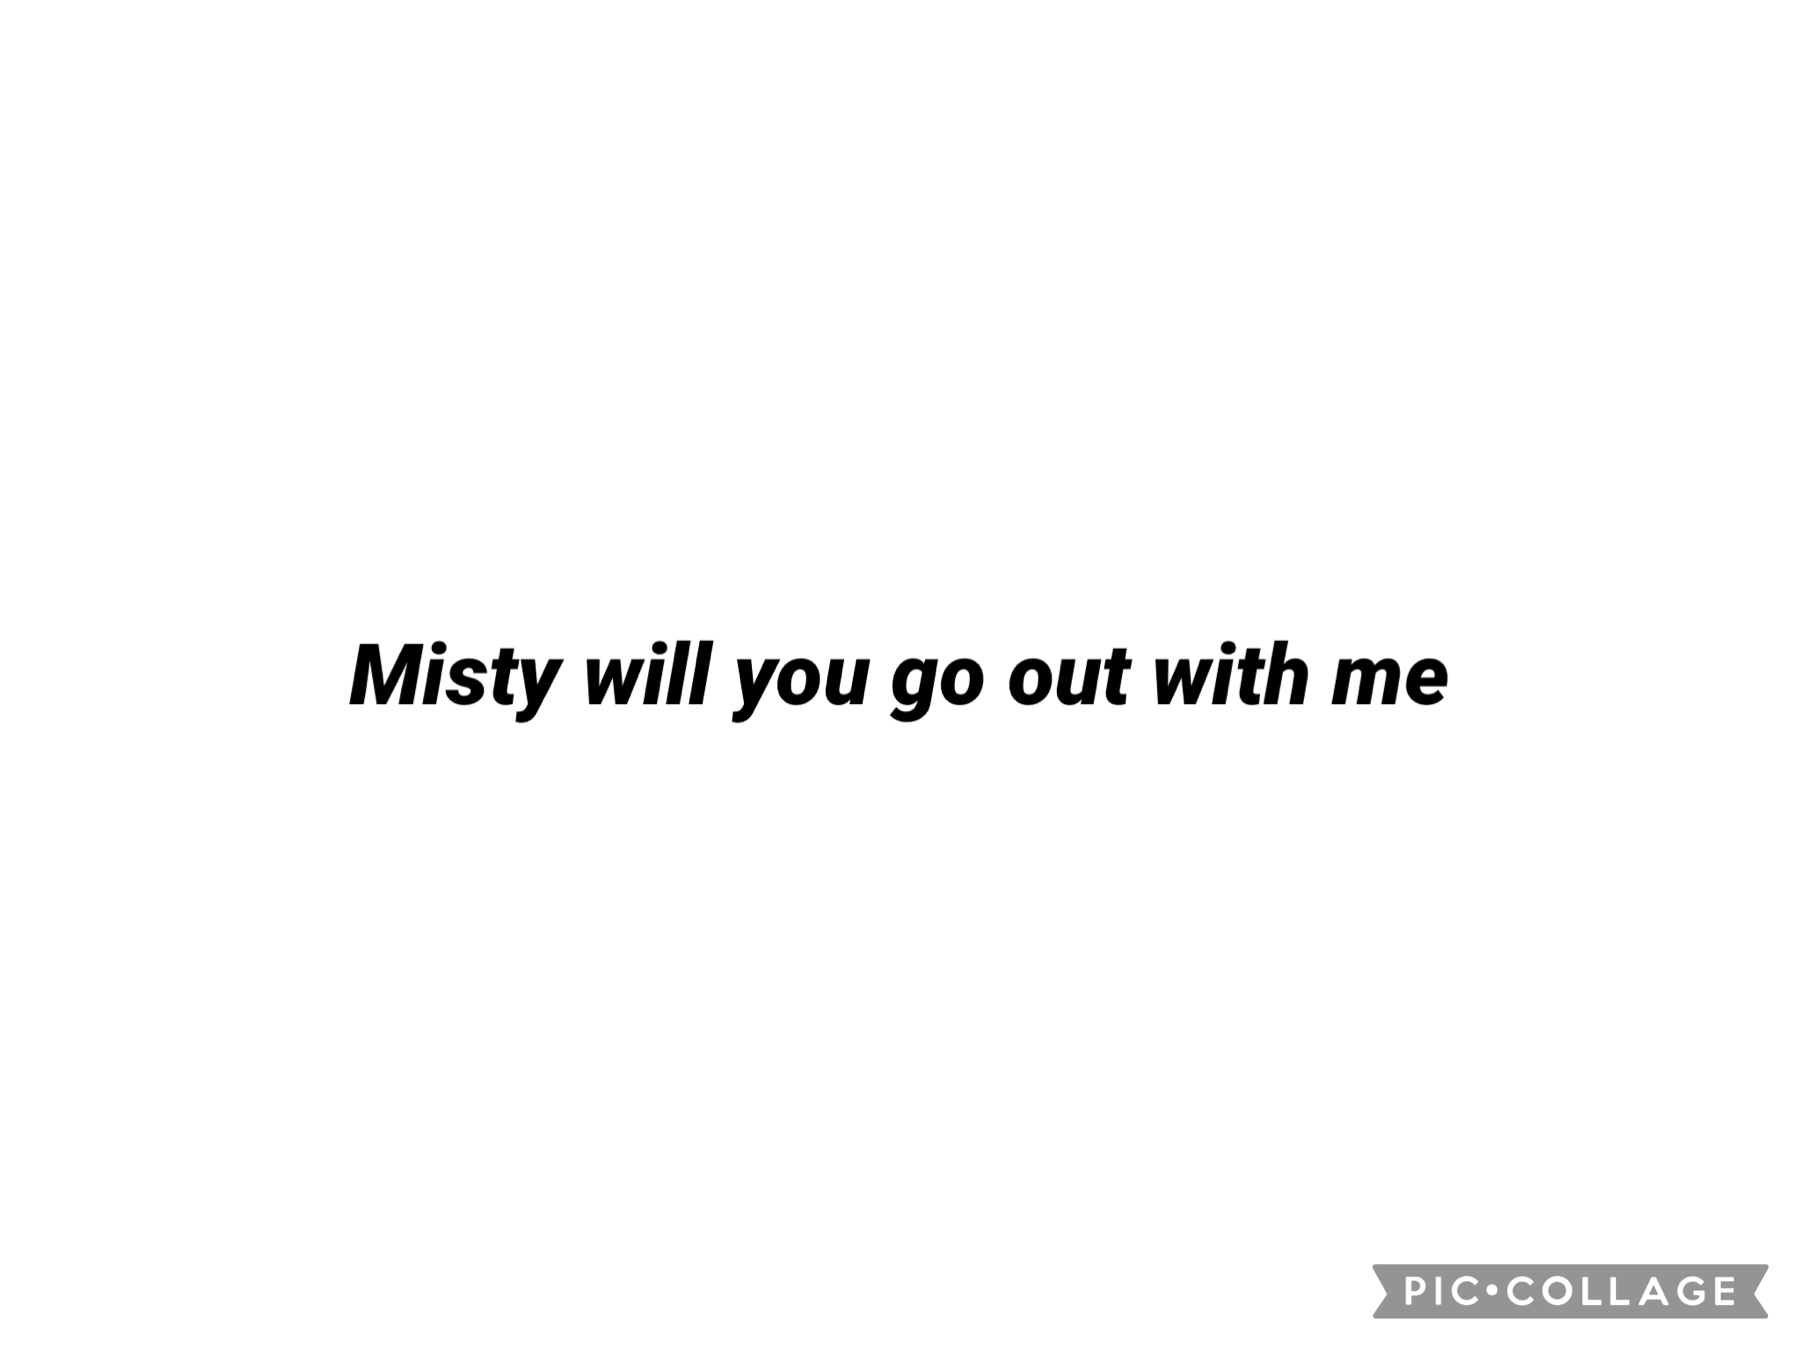 Please please misty 